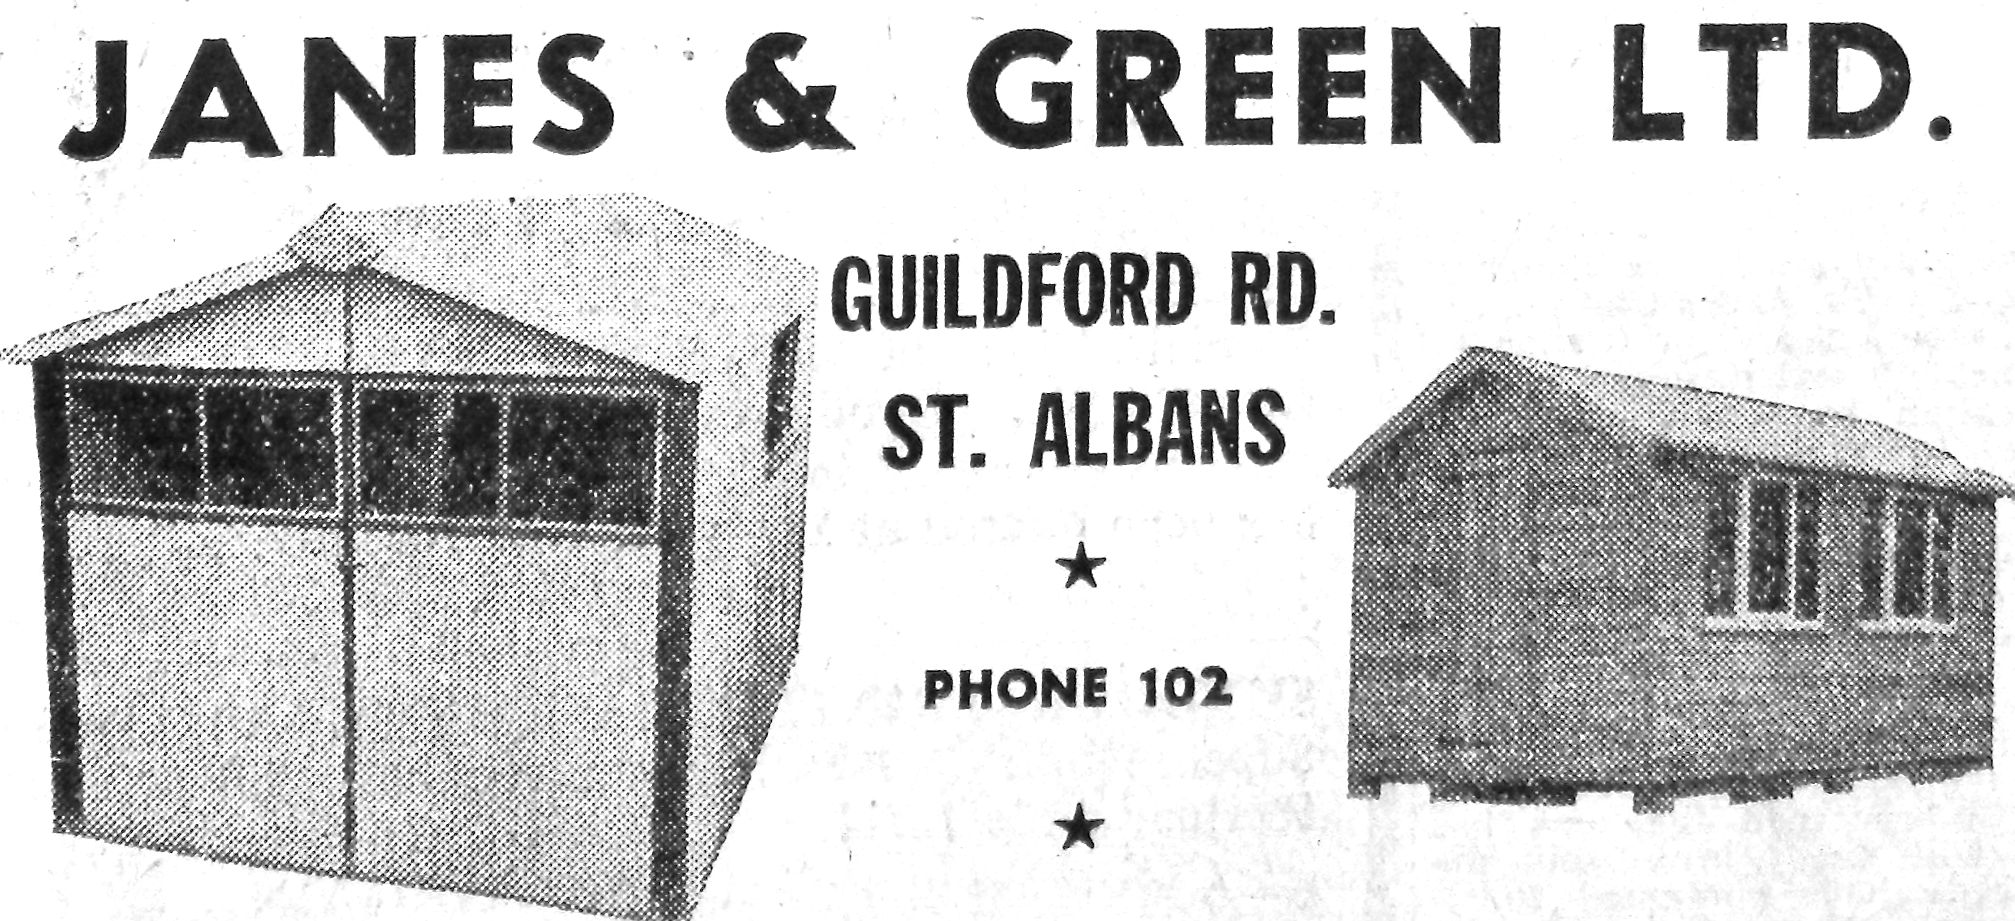 Press advert Janes & Green Ltd